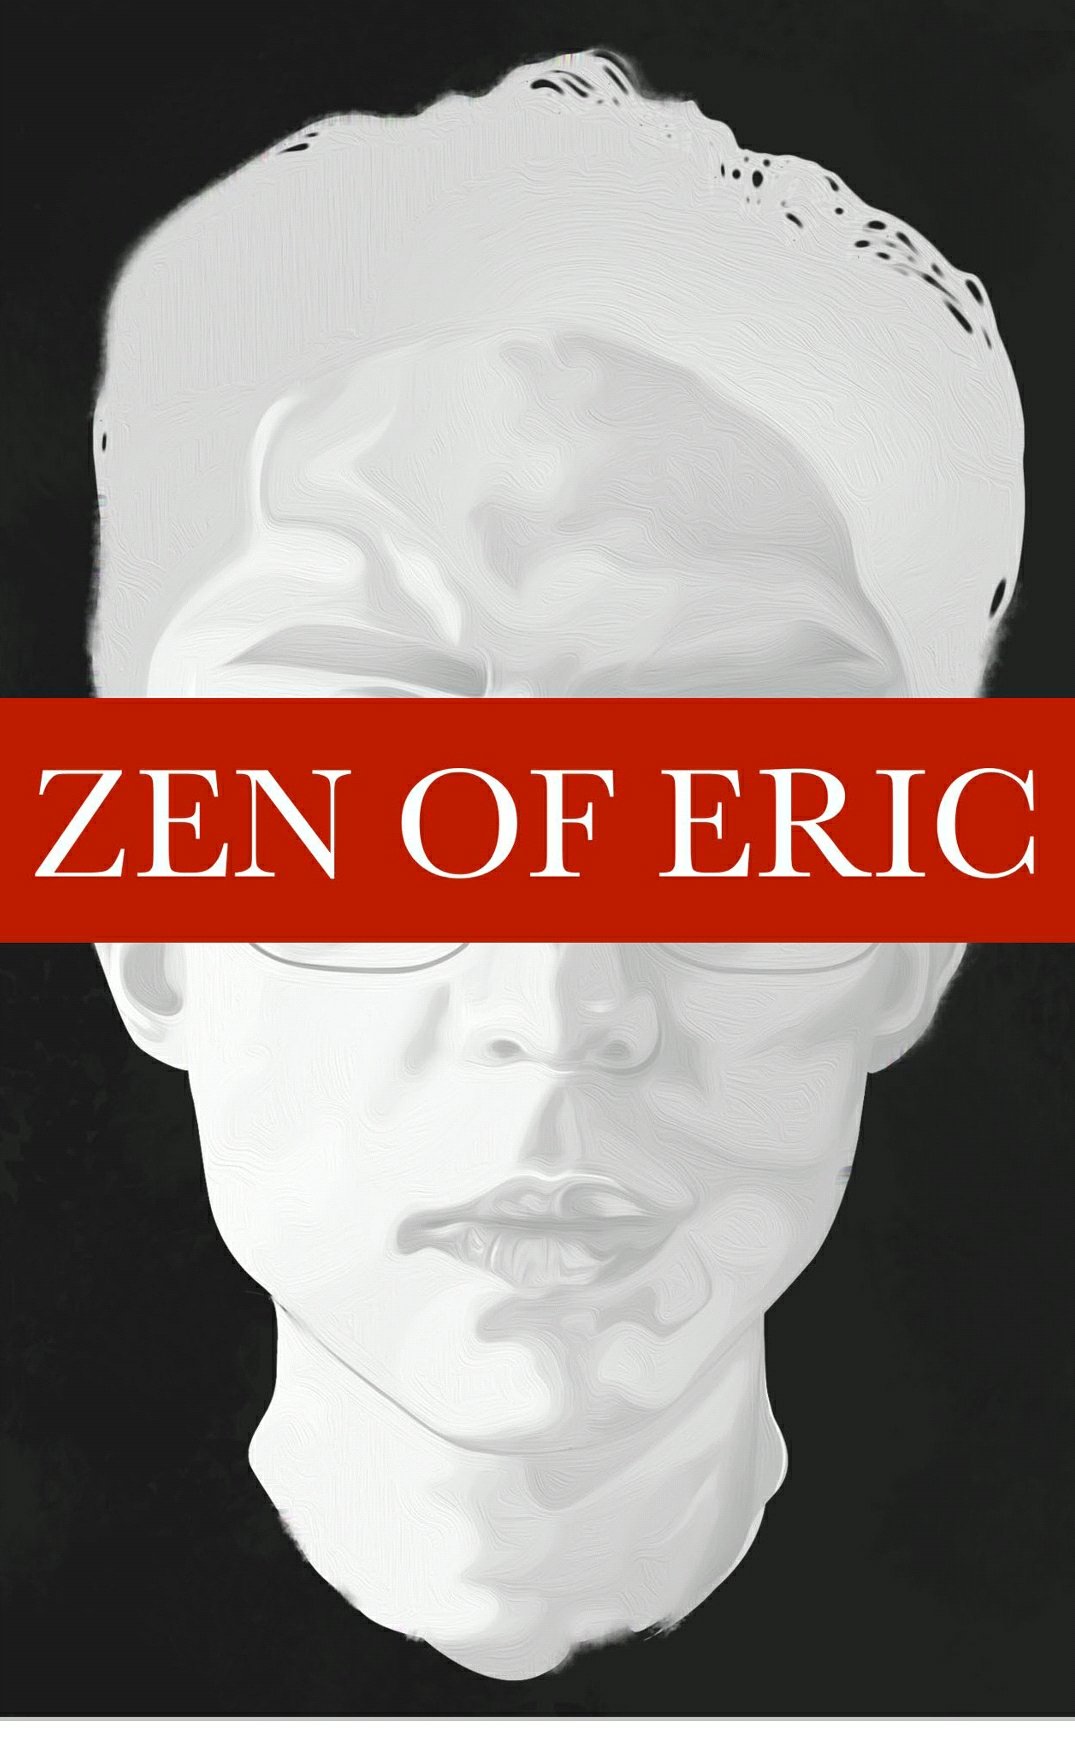 Zen of eric cover